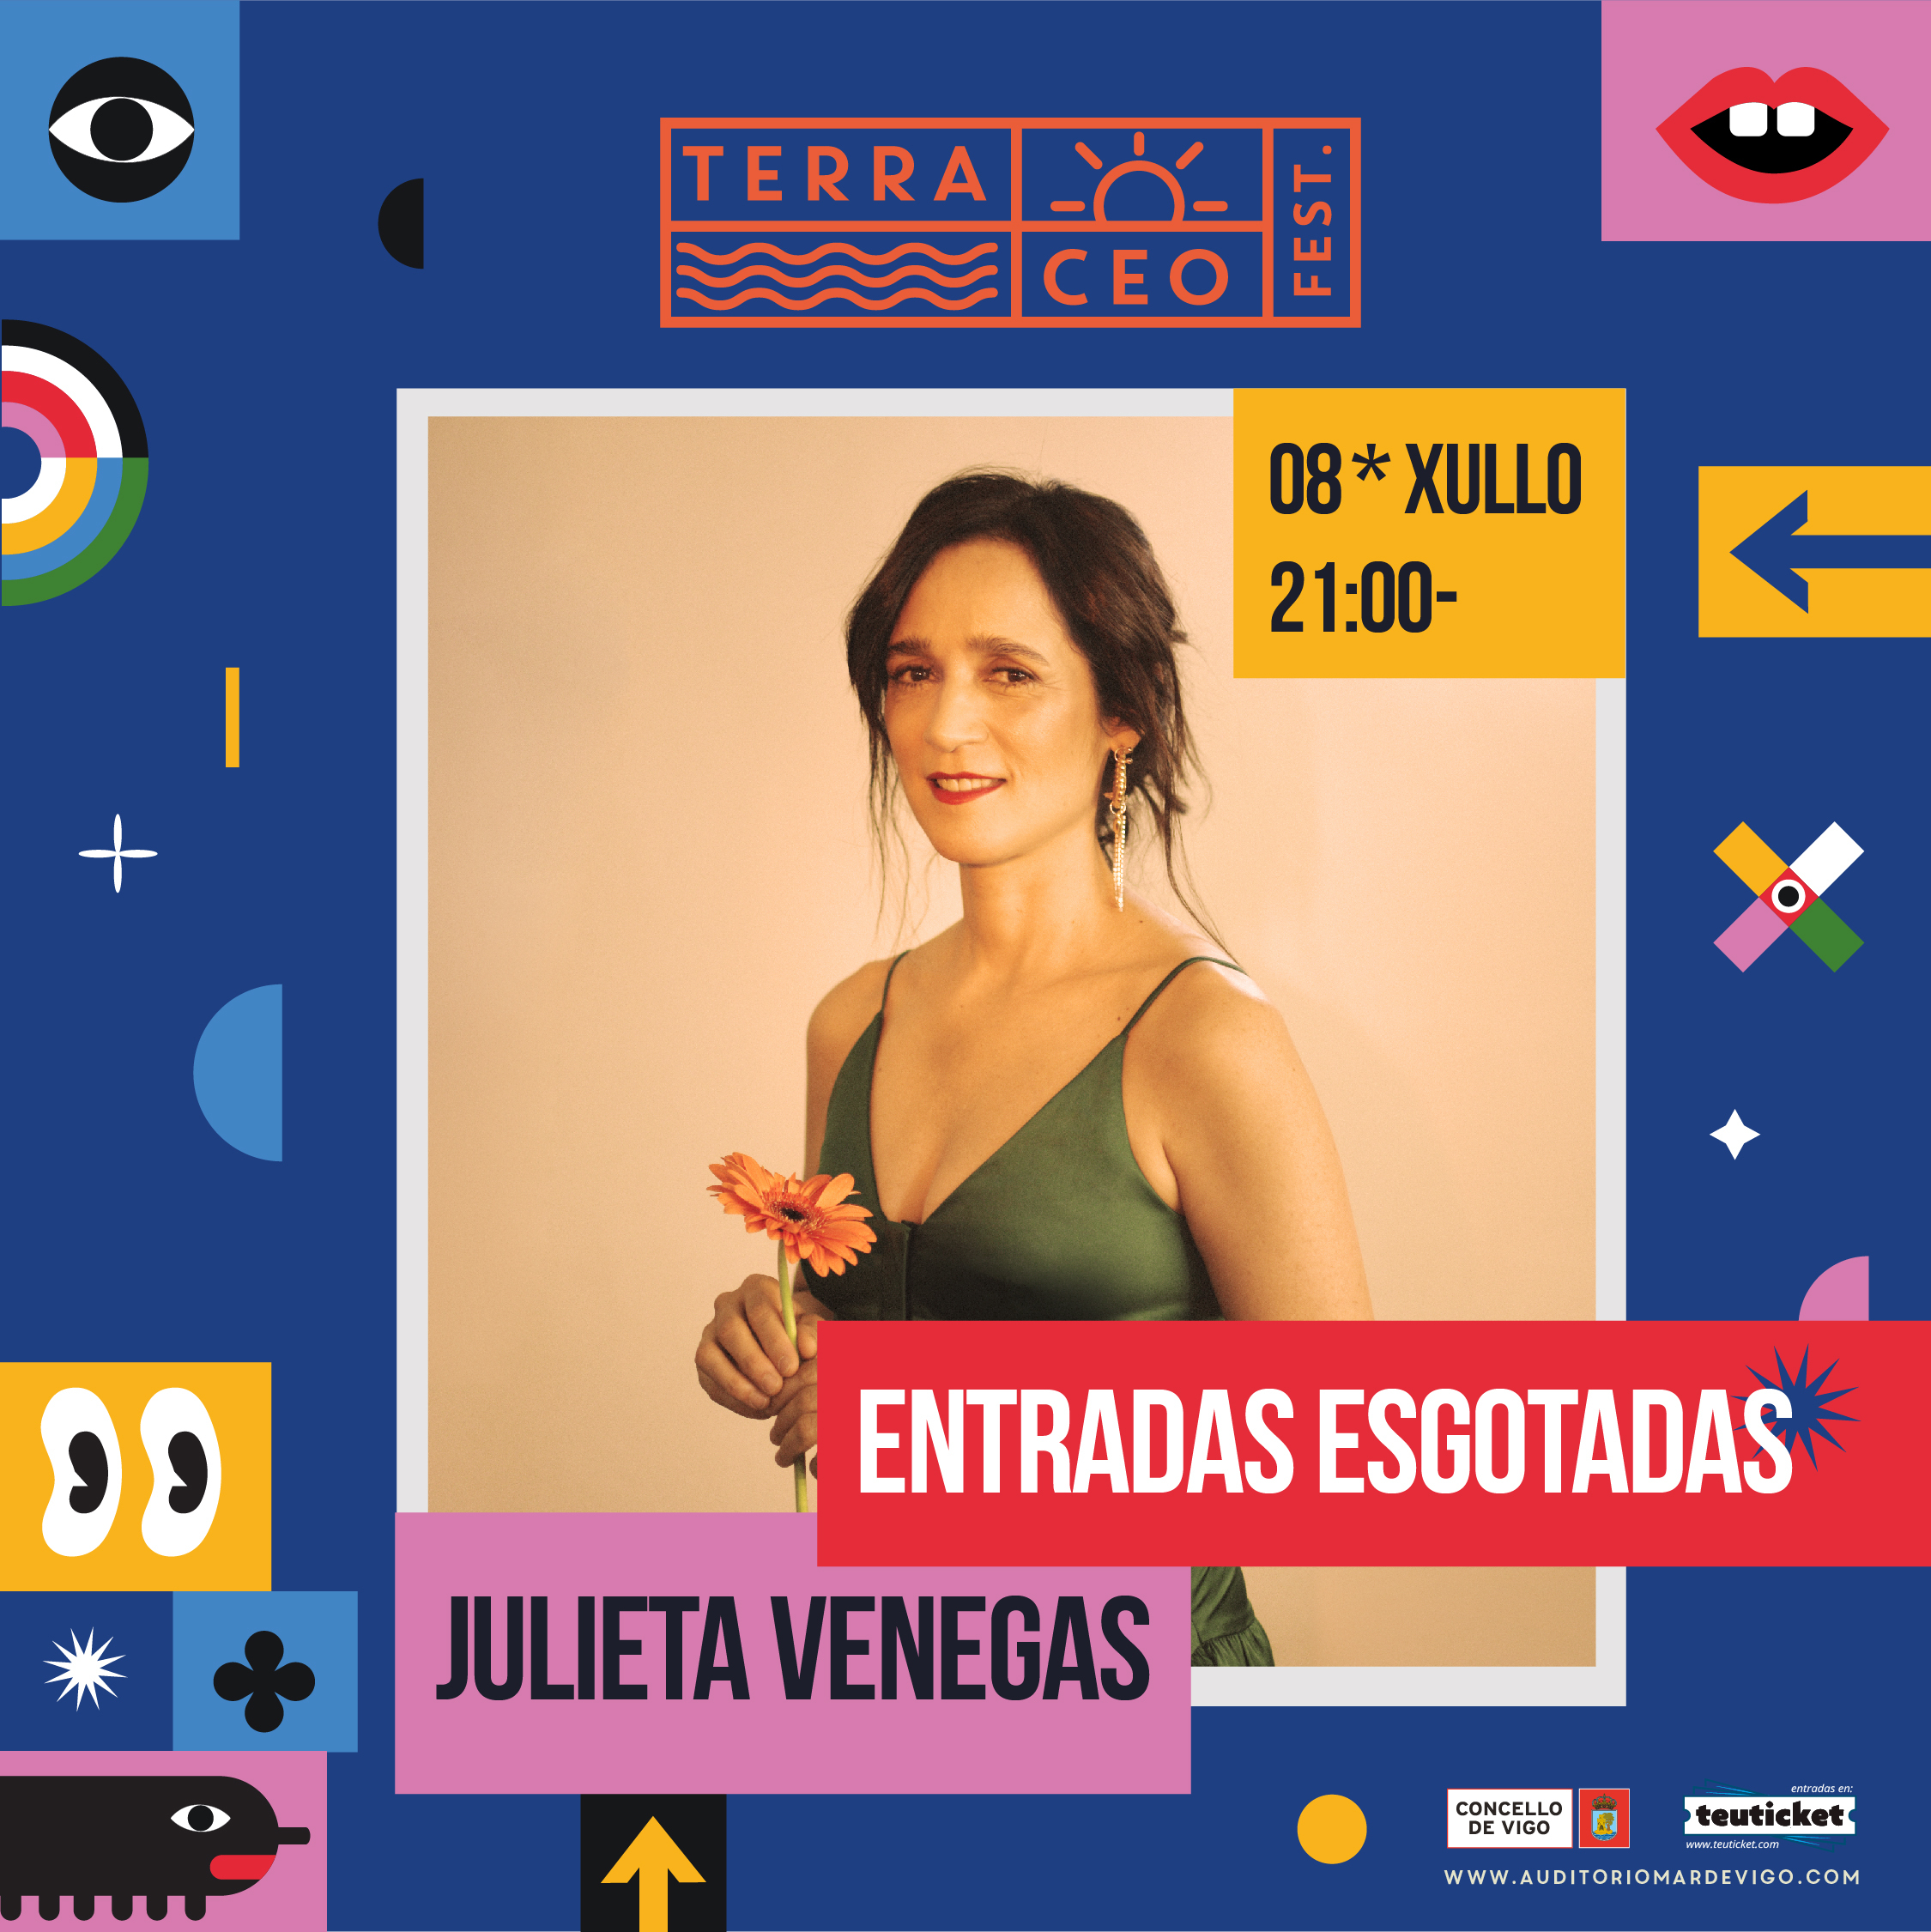 Julieta Venegas esgota as entradas para a súa actuación en Vigo